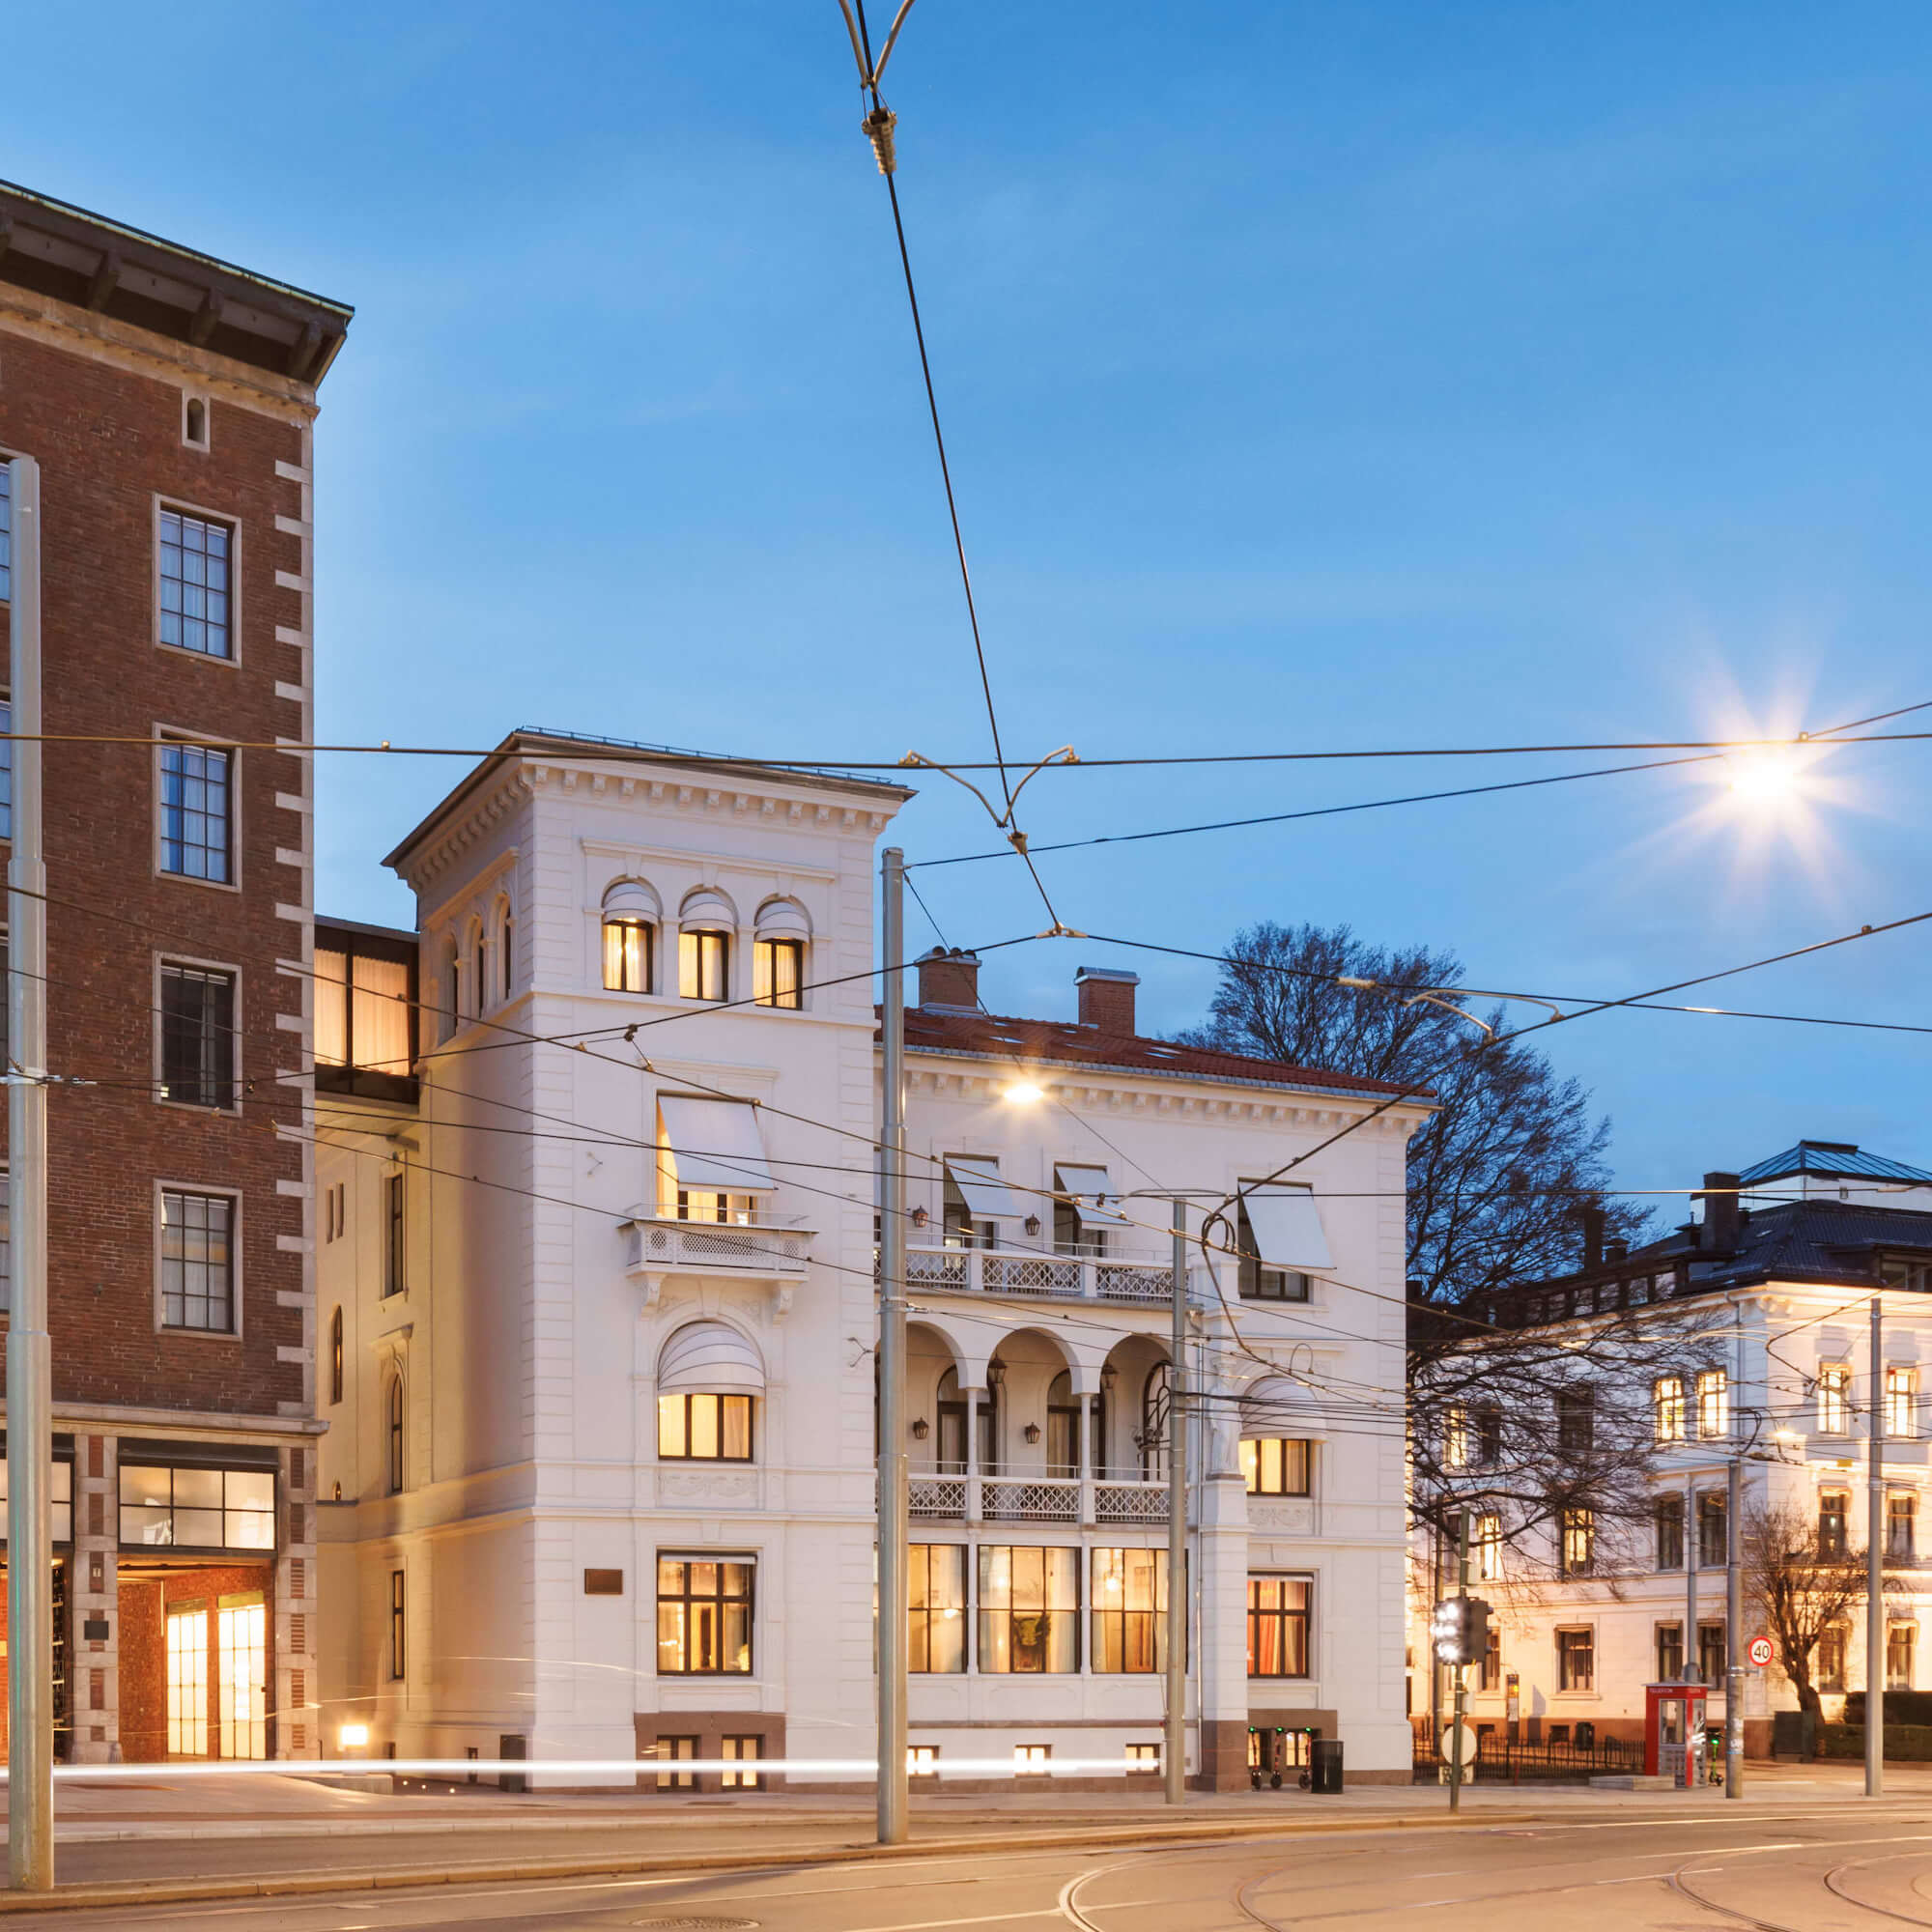 The facade of Villa Incognito, a part of Sommerro a hotel in Oslo.